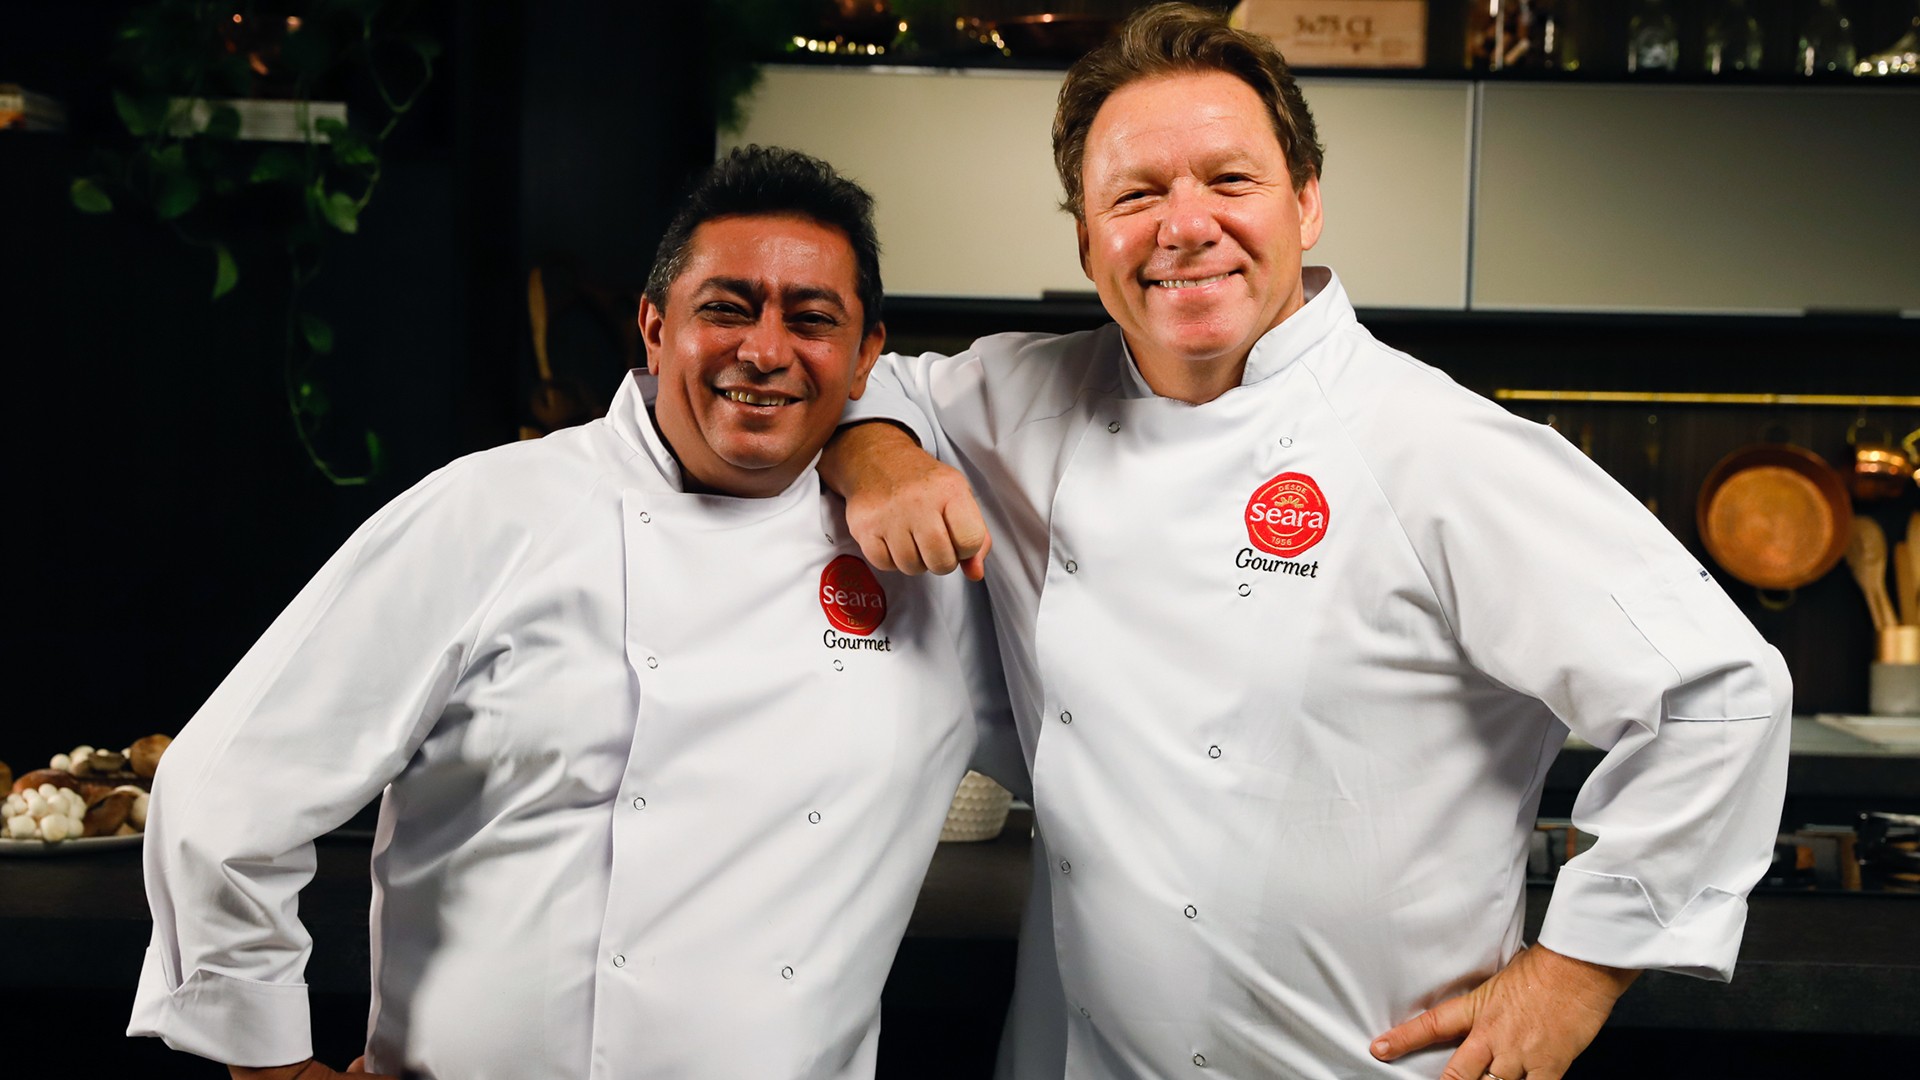 Claude Troisgois e João Batista juntos com avental da Seara Gourmet.